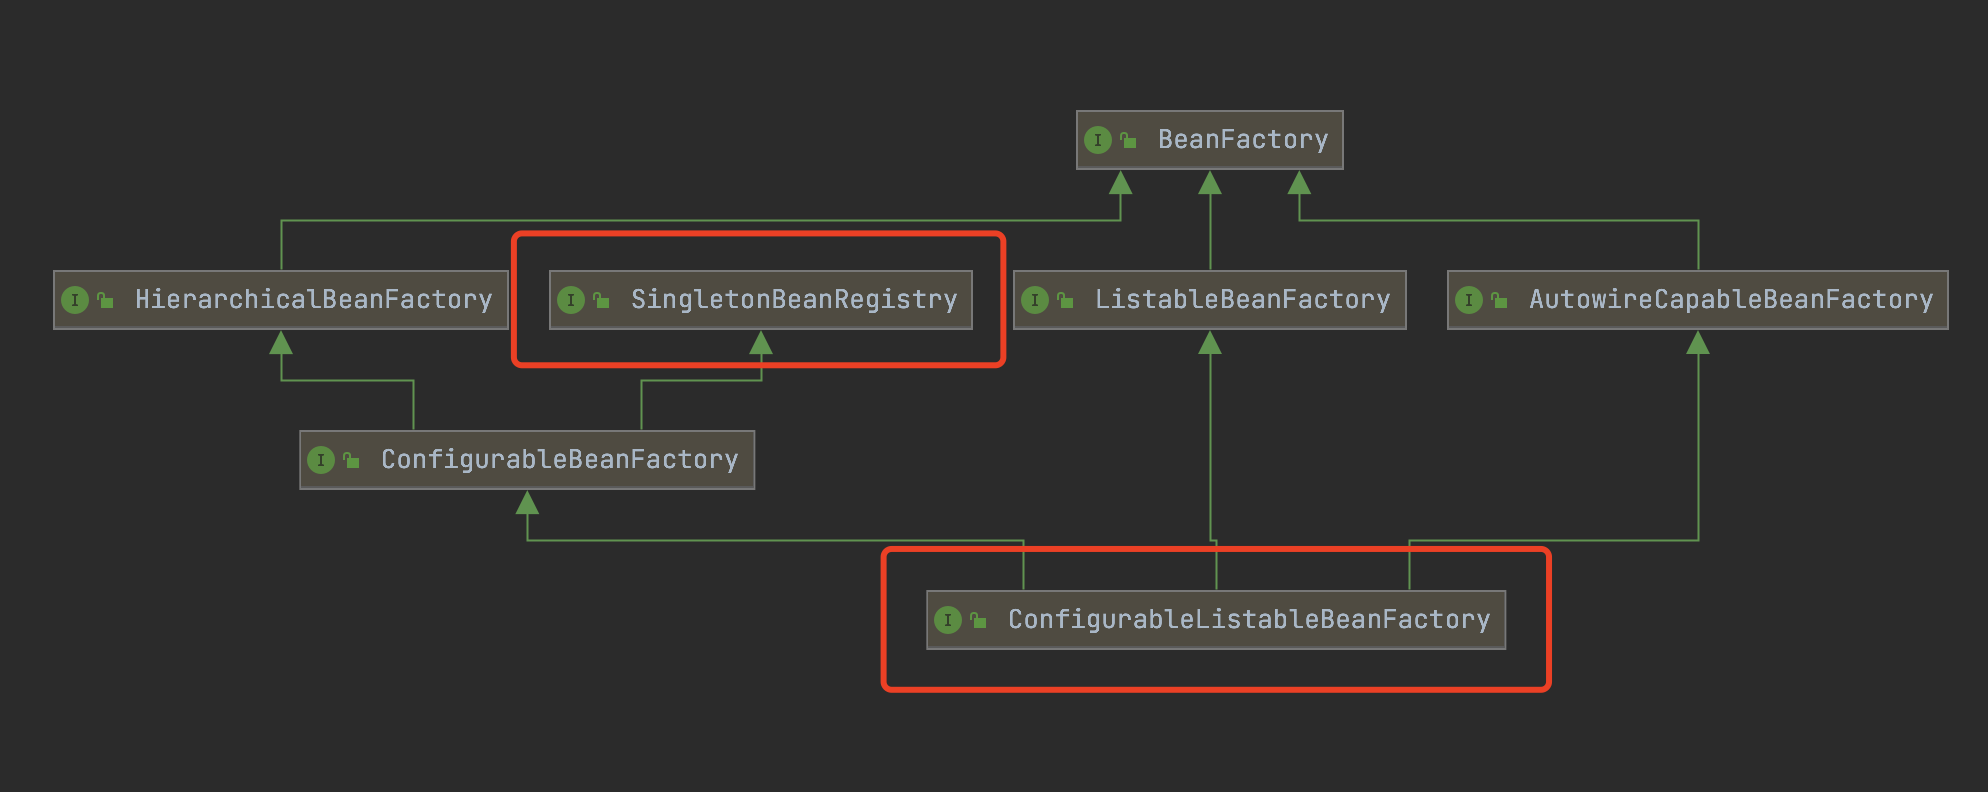 ConfigurableListableBeanFactory类图